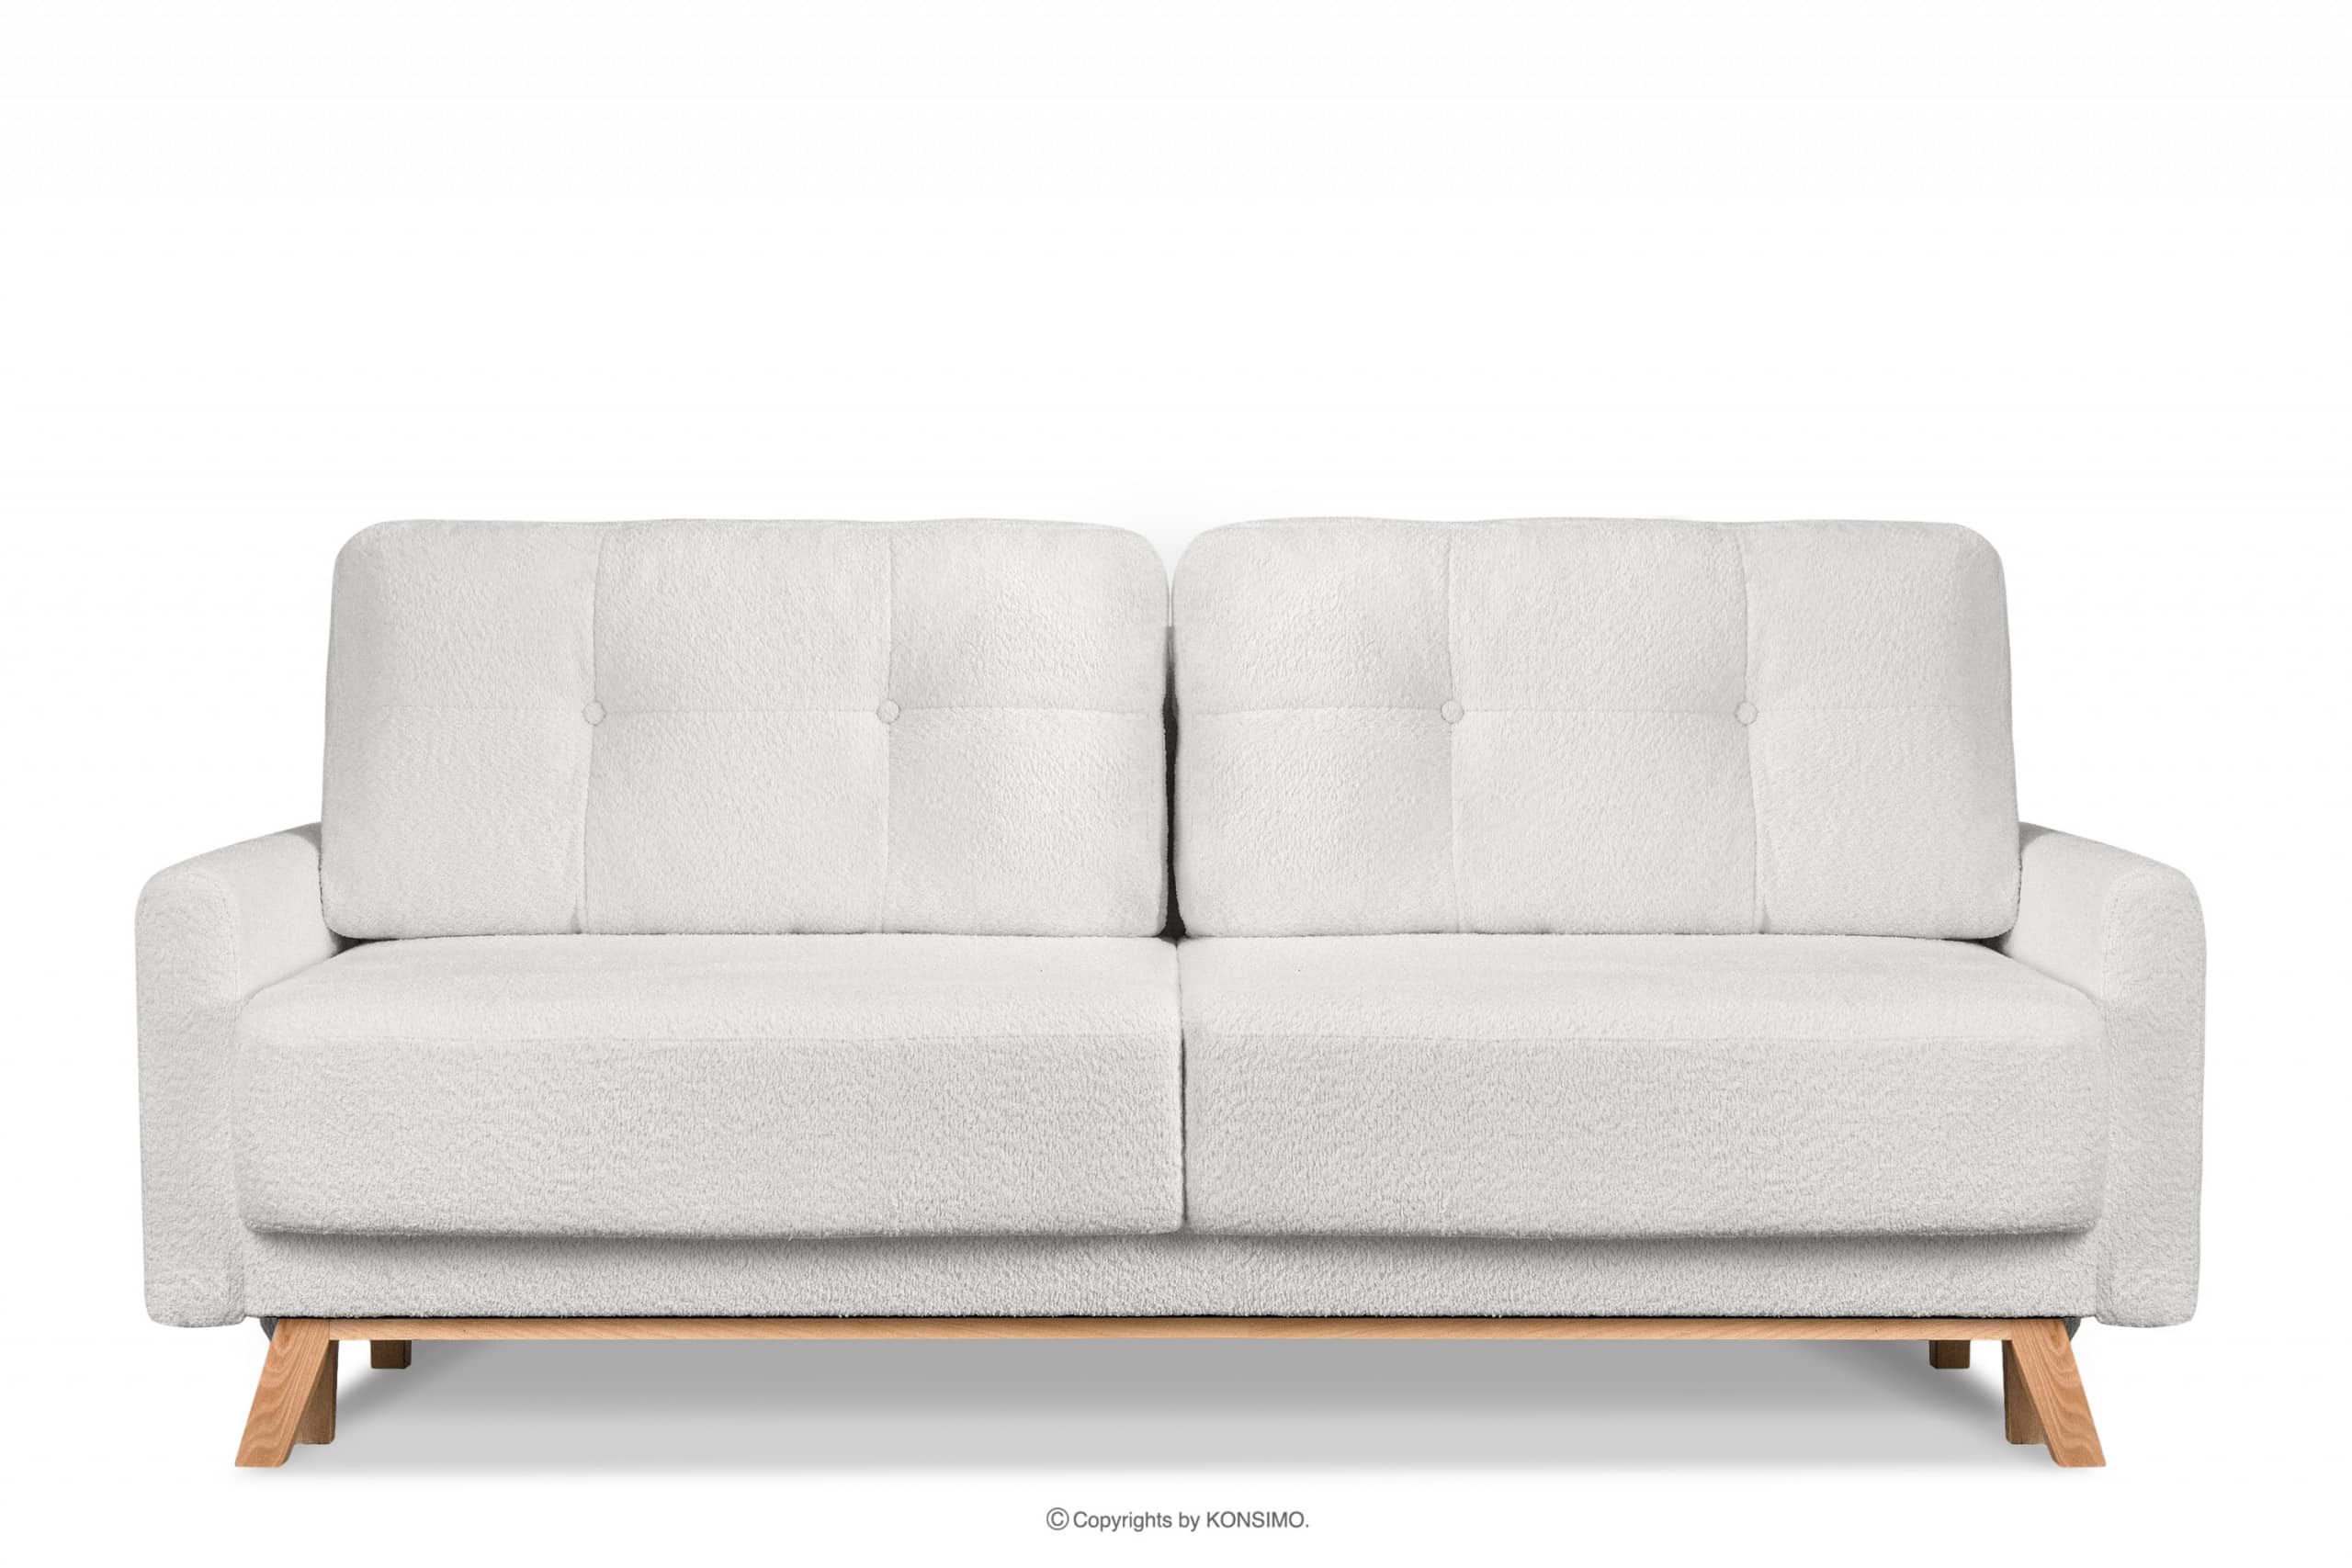 Skandinavisches Sofa Wohnzimmer mit Stauraum für Bettwäsche - Creme Bouclé